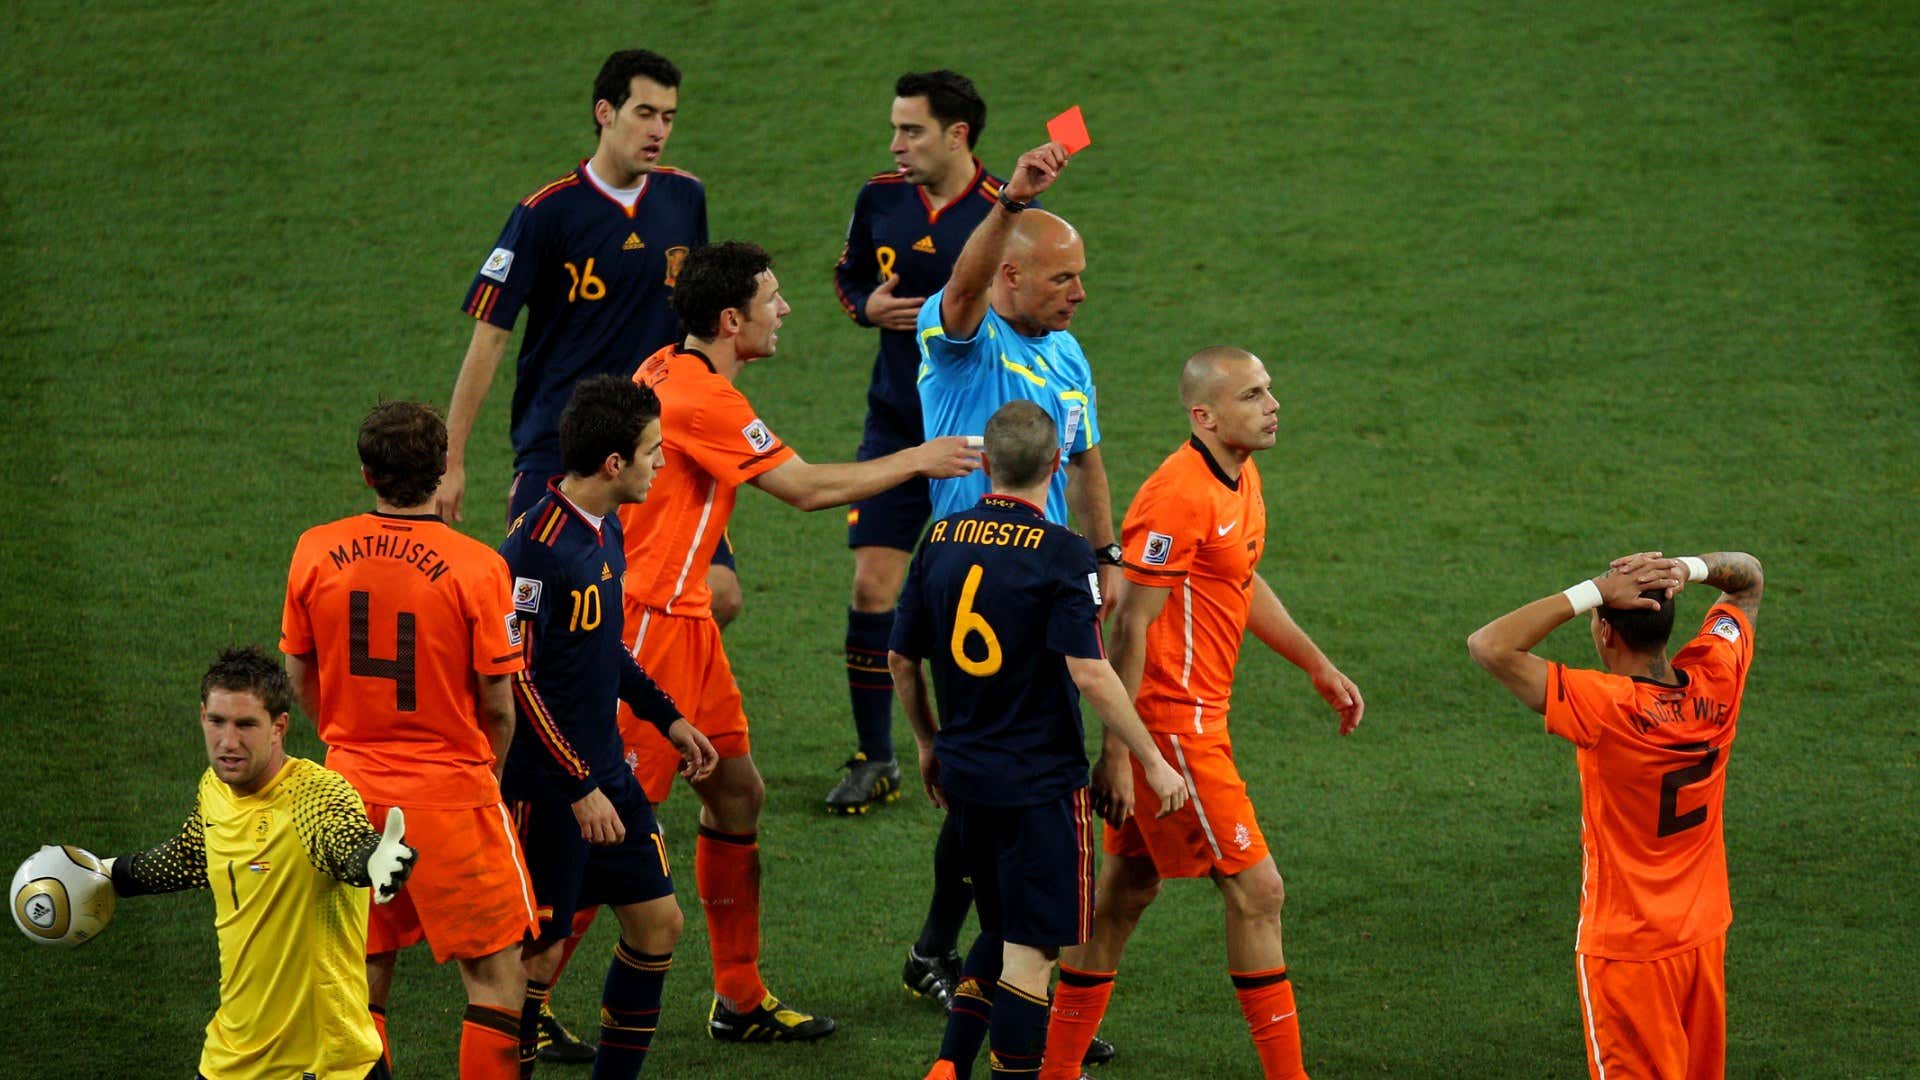 Belanda vs. Spanyol 2010